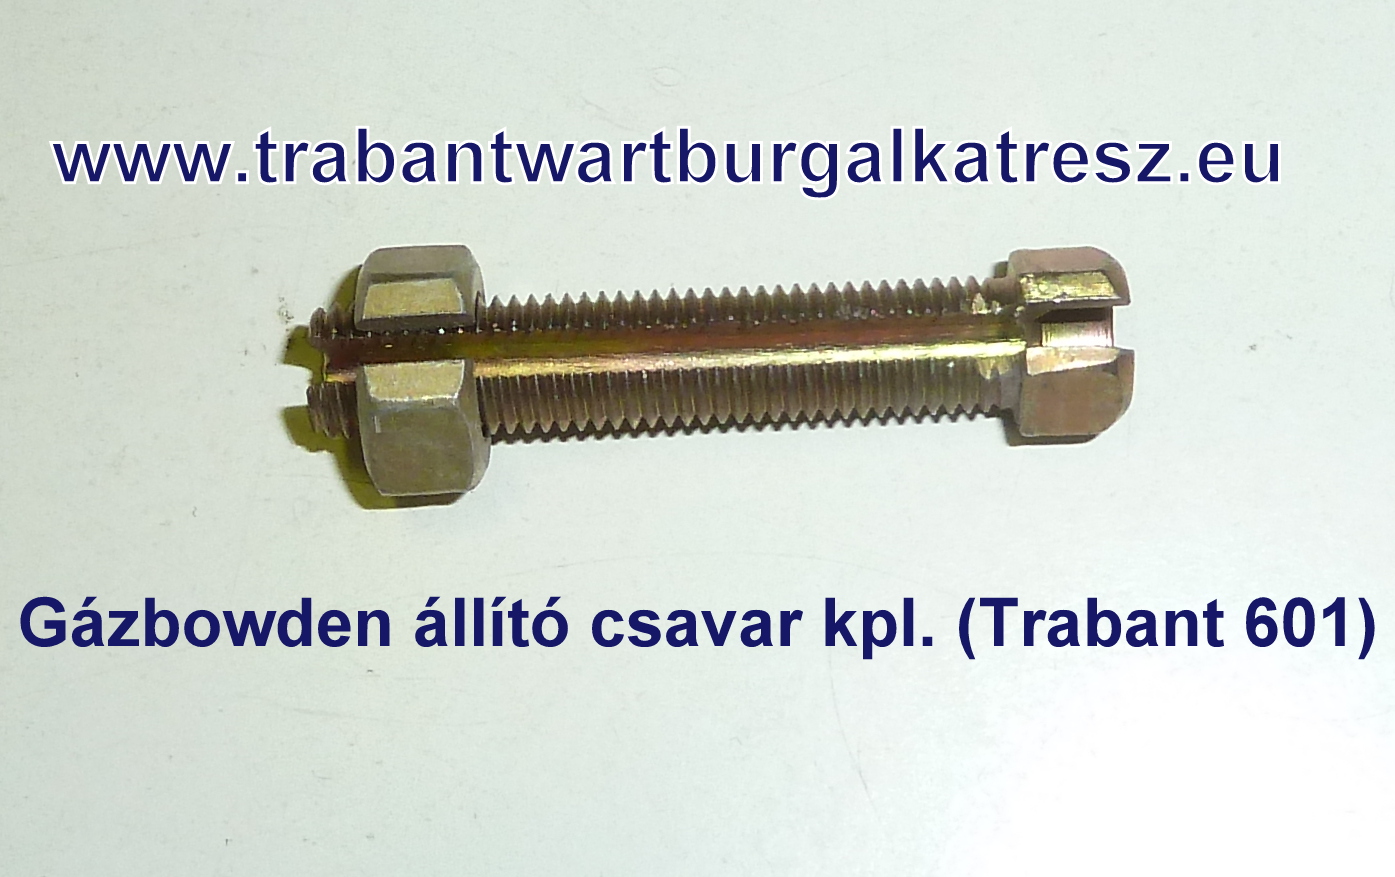 Gázbowden állító    csavar kpl. DDR (Tr.601)